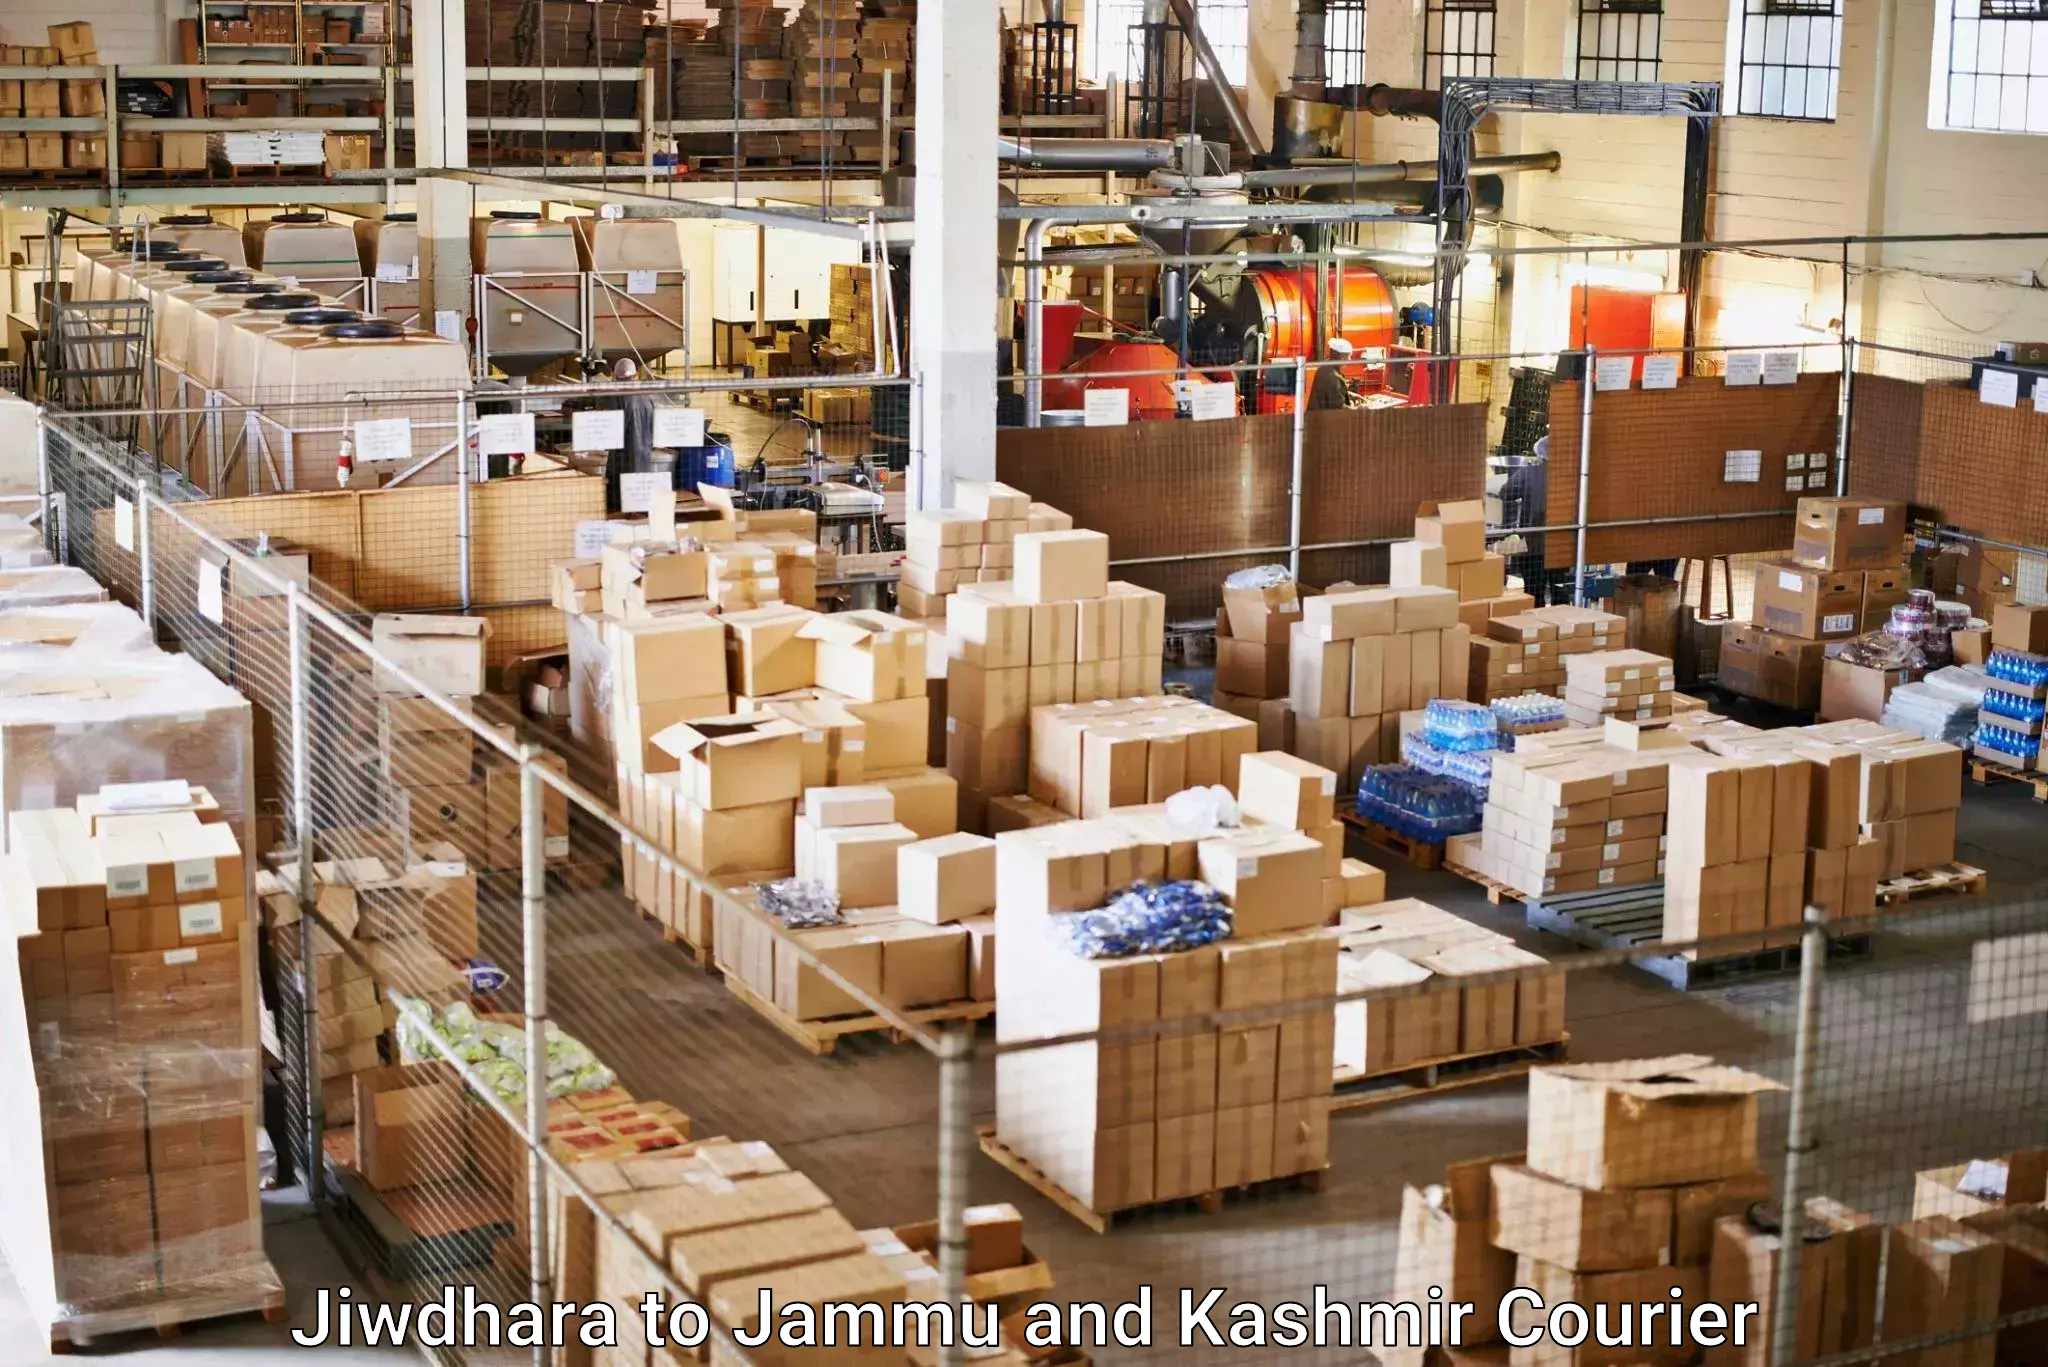 High-capacity parcel service Jiwdhara to Sopore